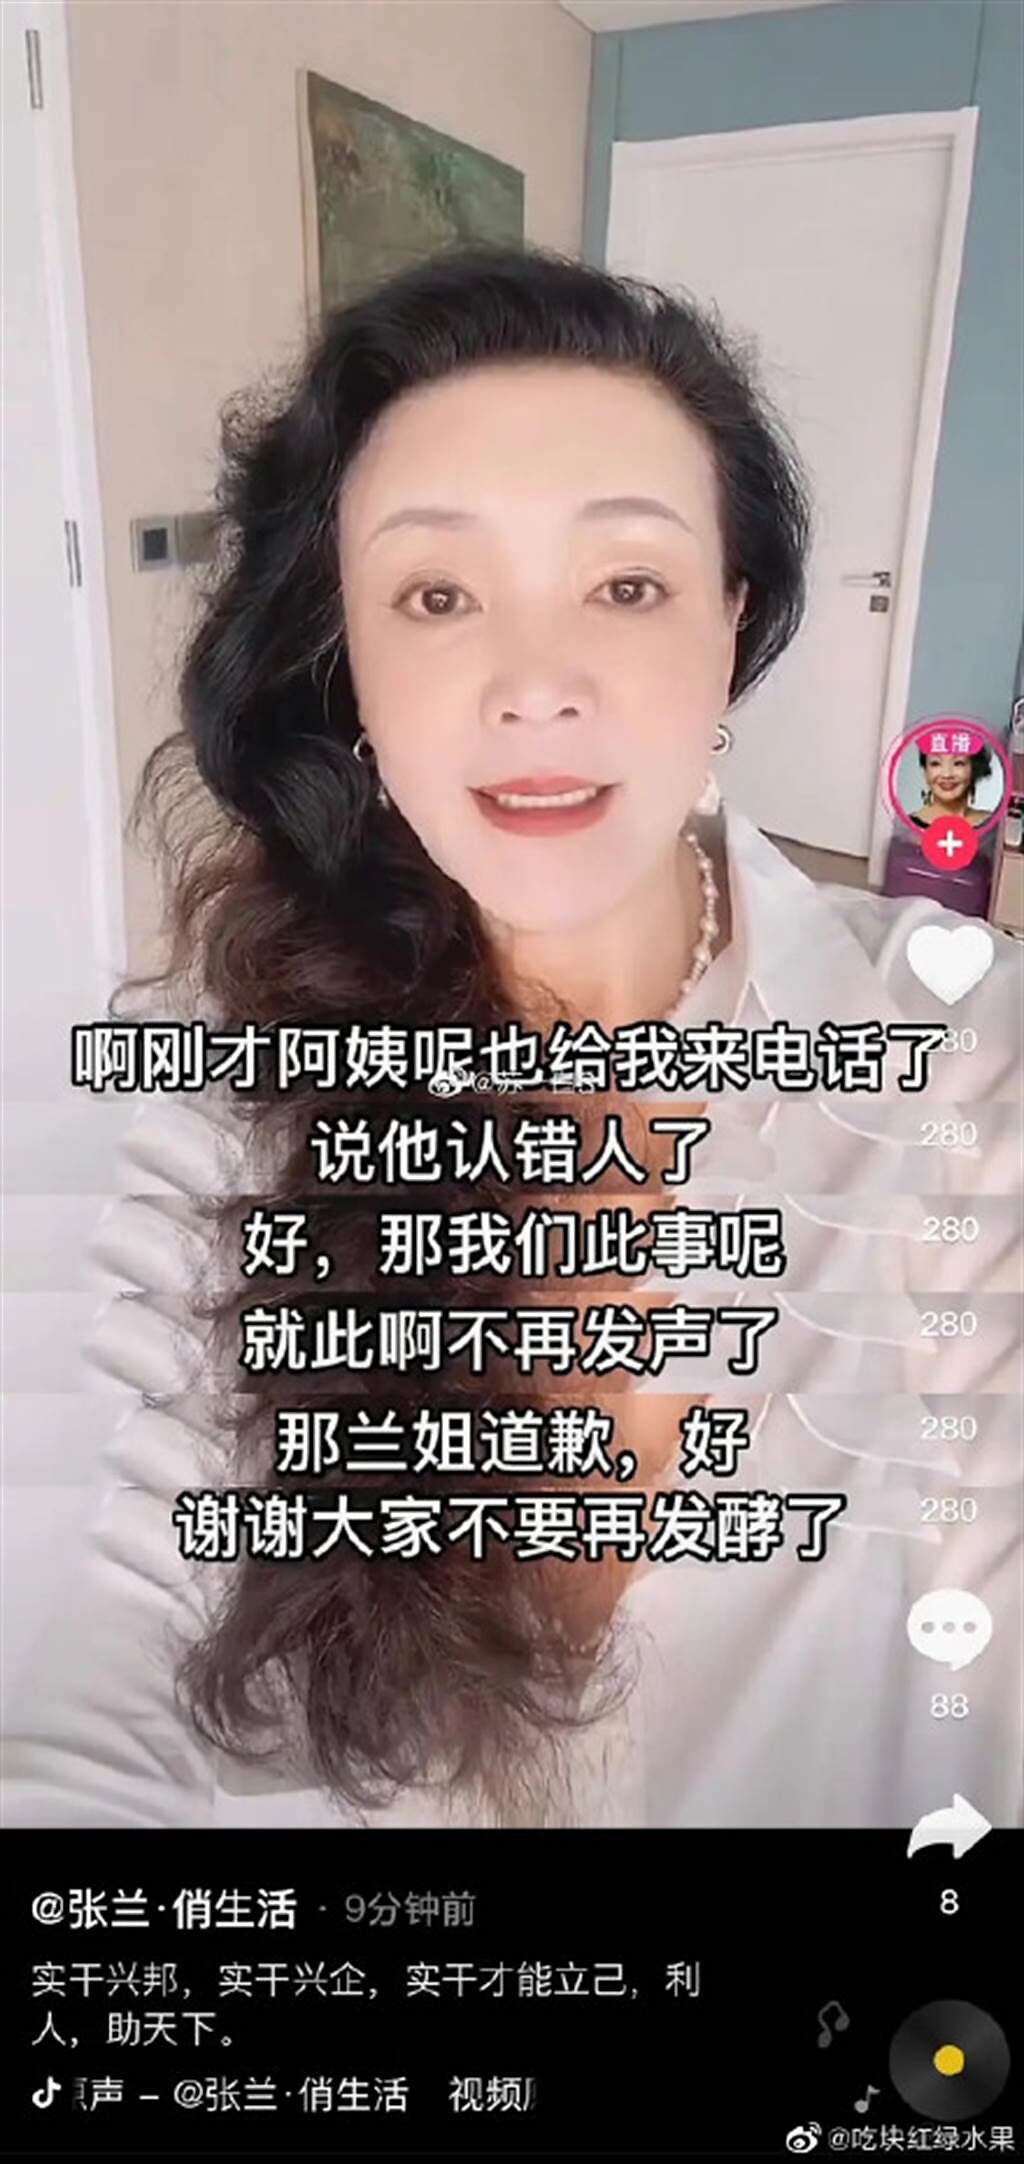 張蘭上傳影片向陳建州道歉。(圖/翻攝自微博)